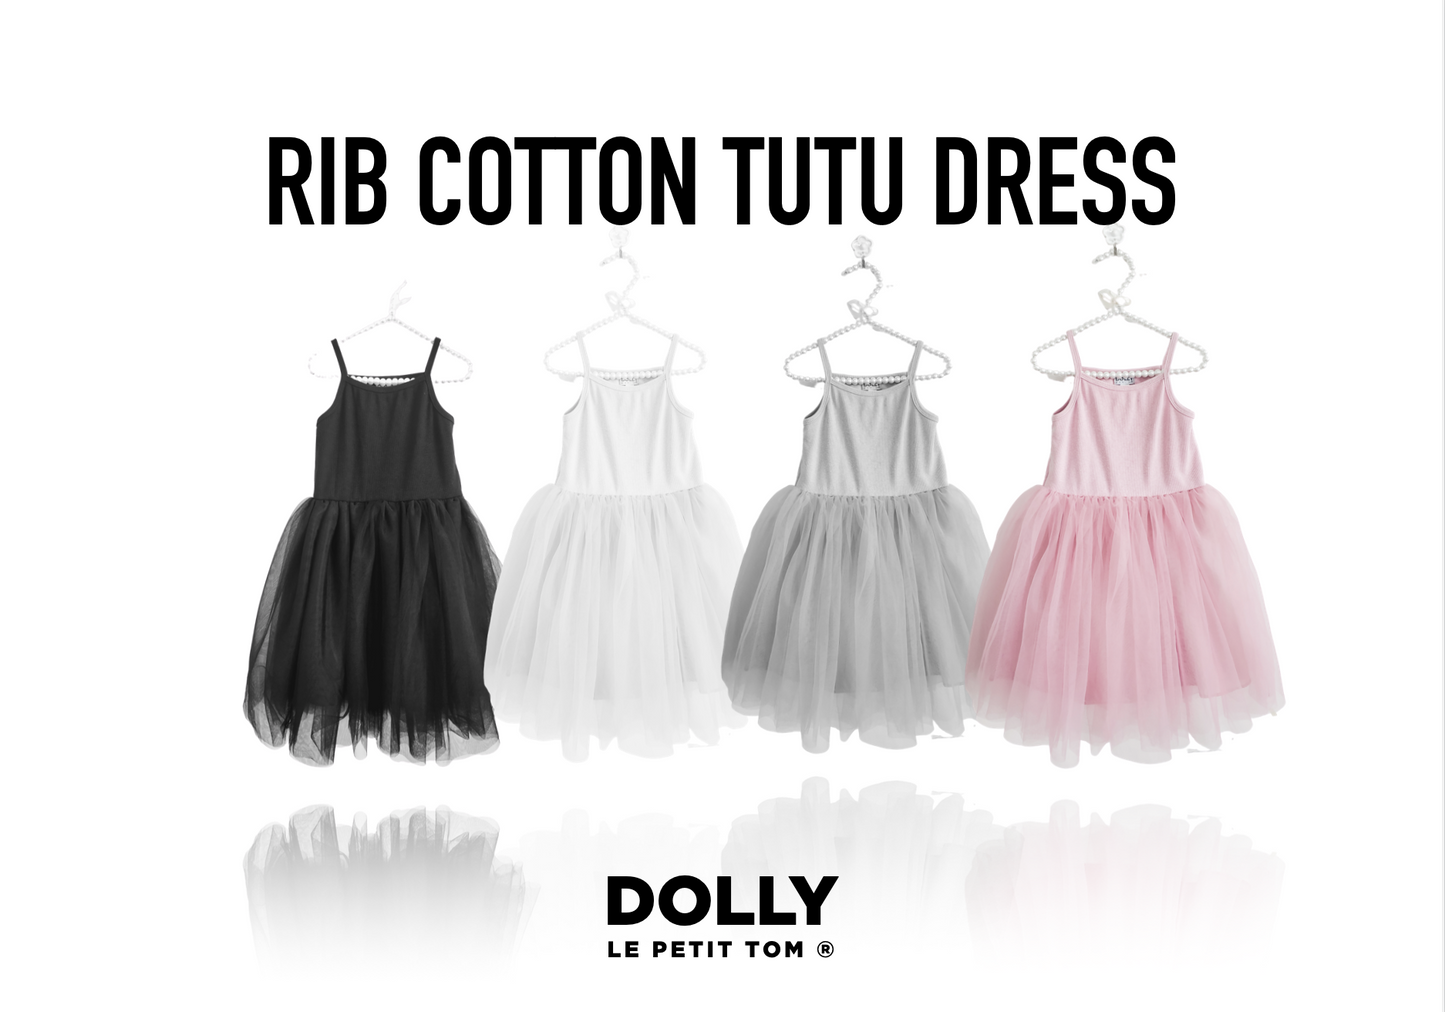 DOLLY by Le Petit Tom ® RIB COTTON TUTU DRESS black